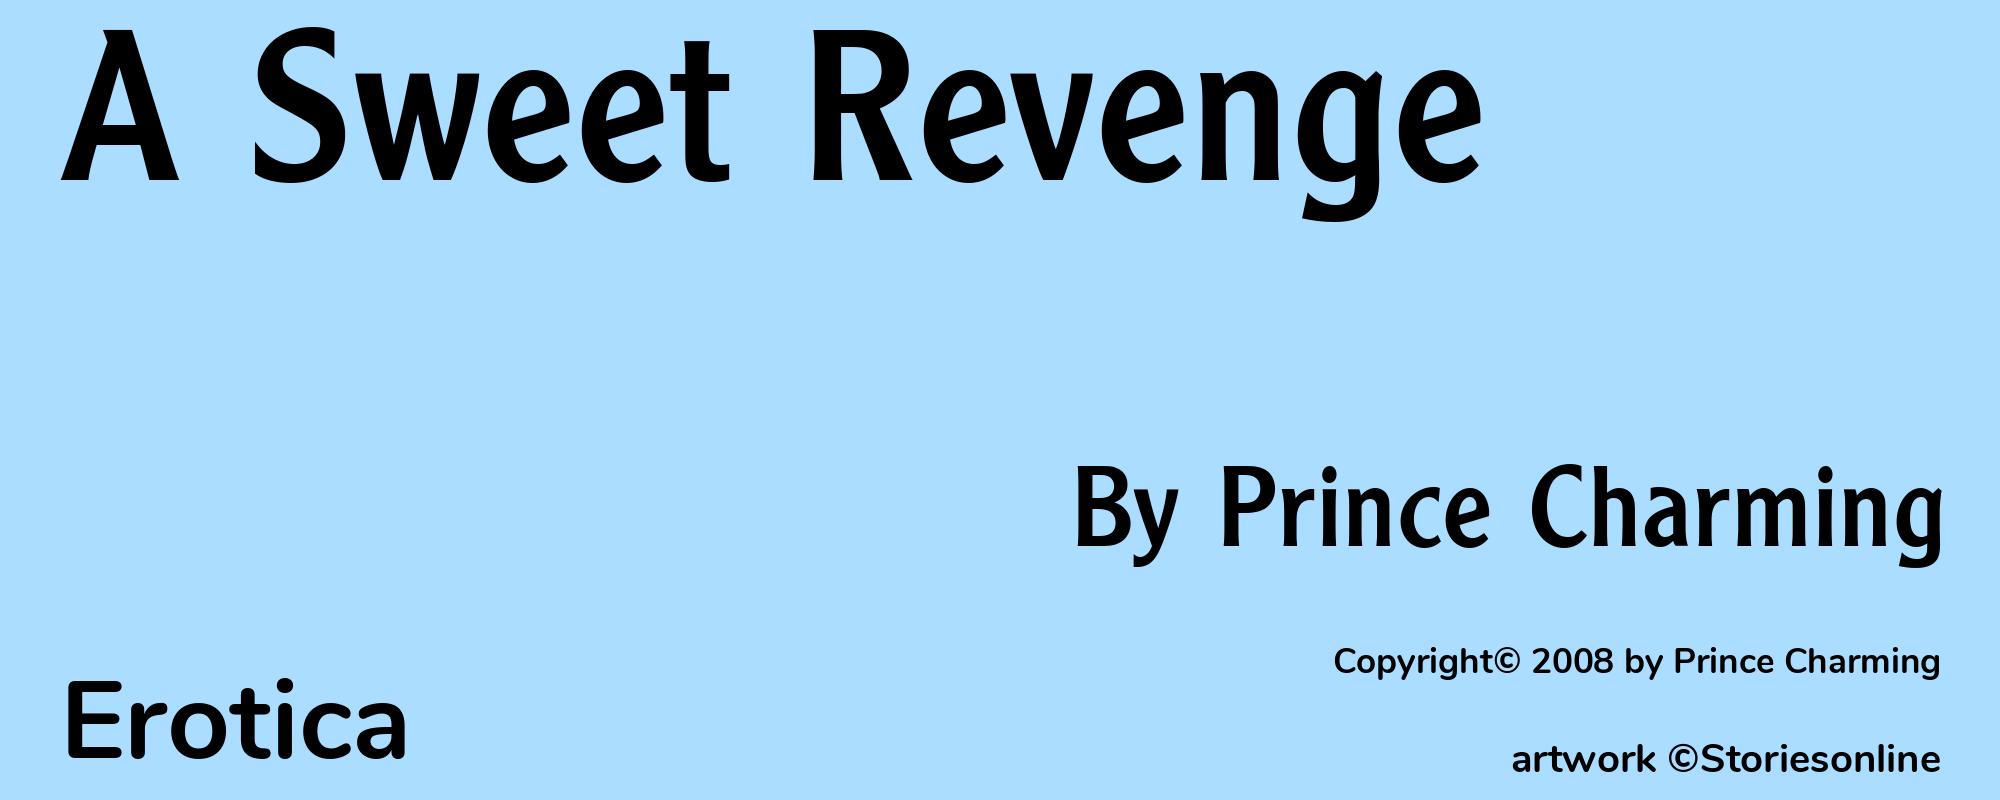 A Sweet Revenge - Cover